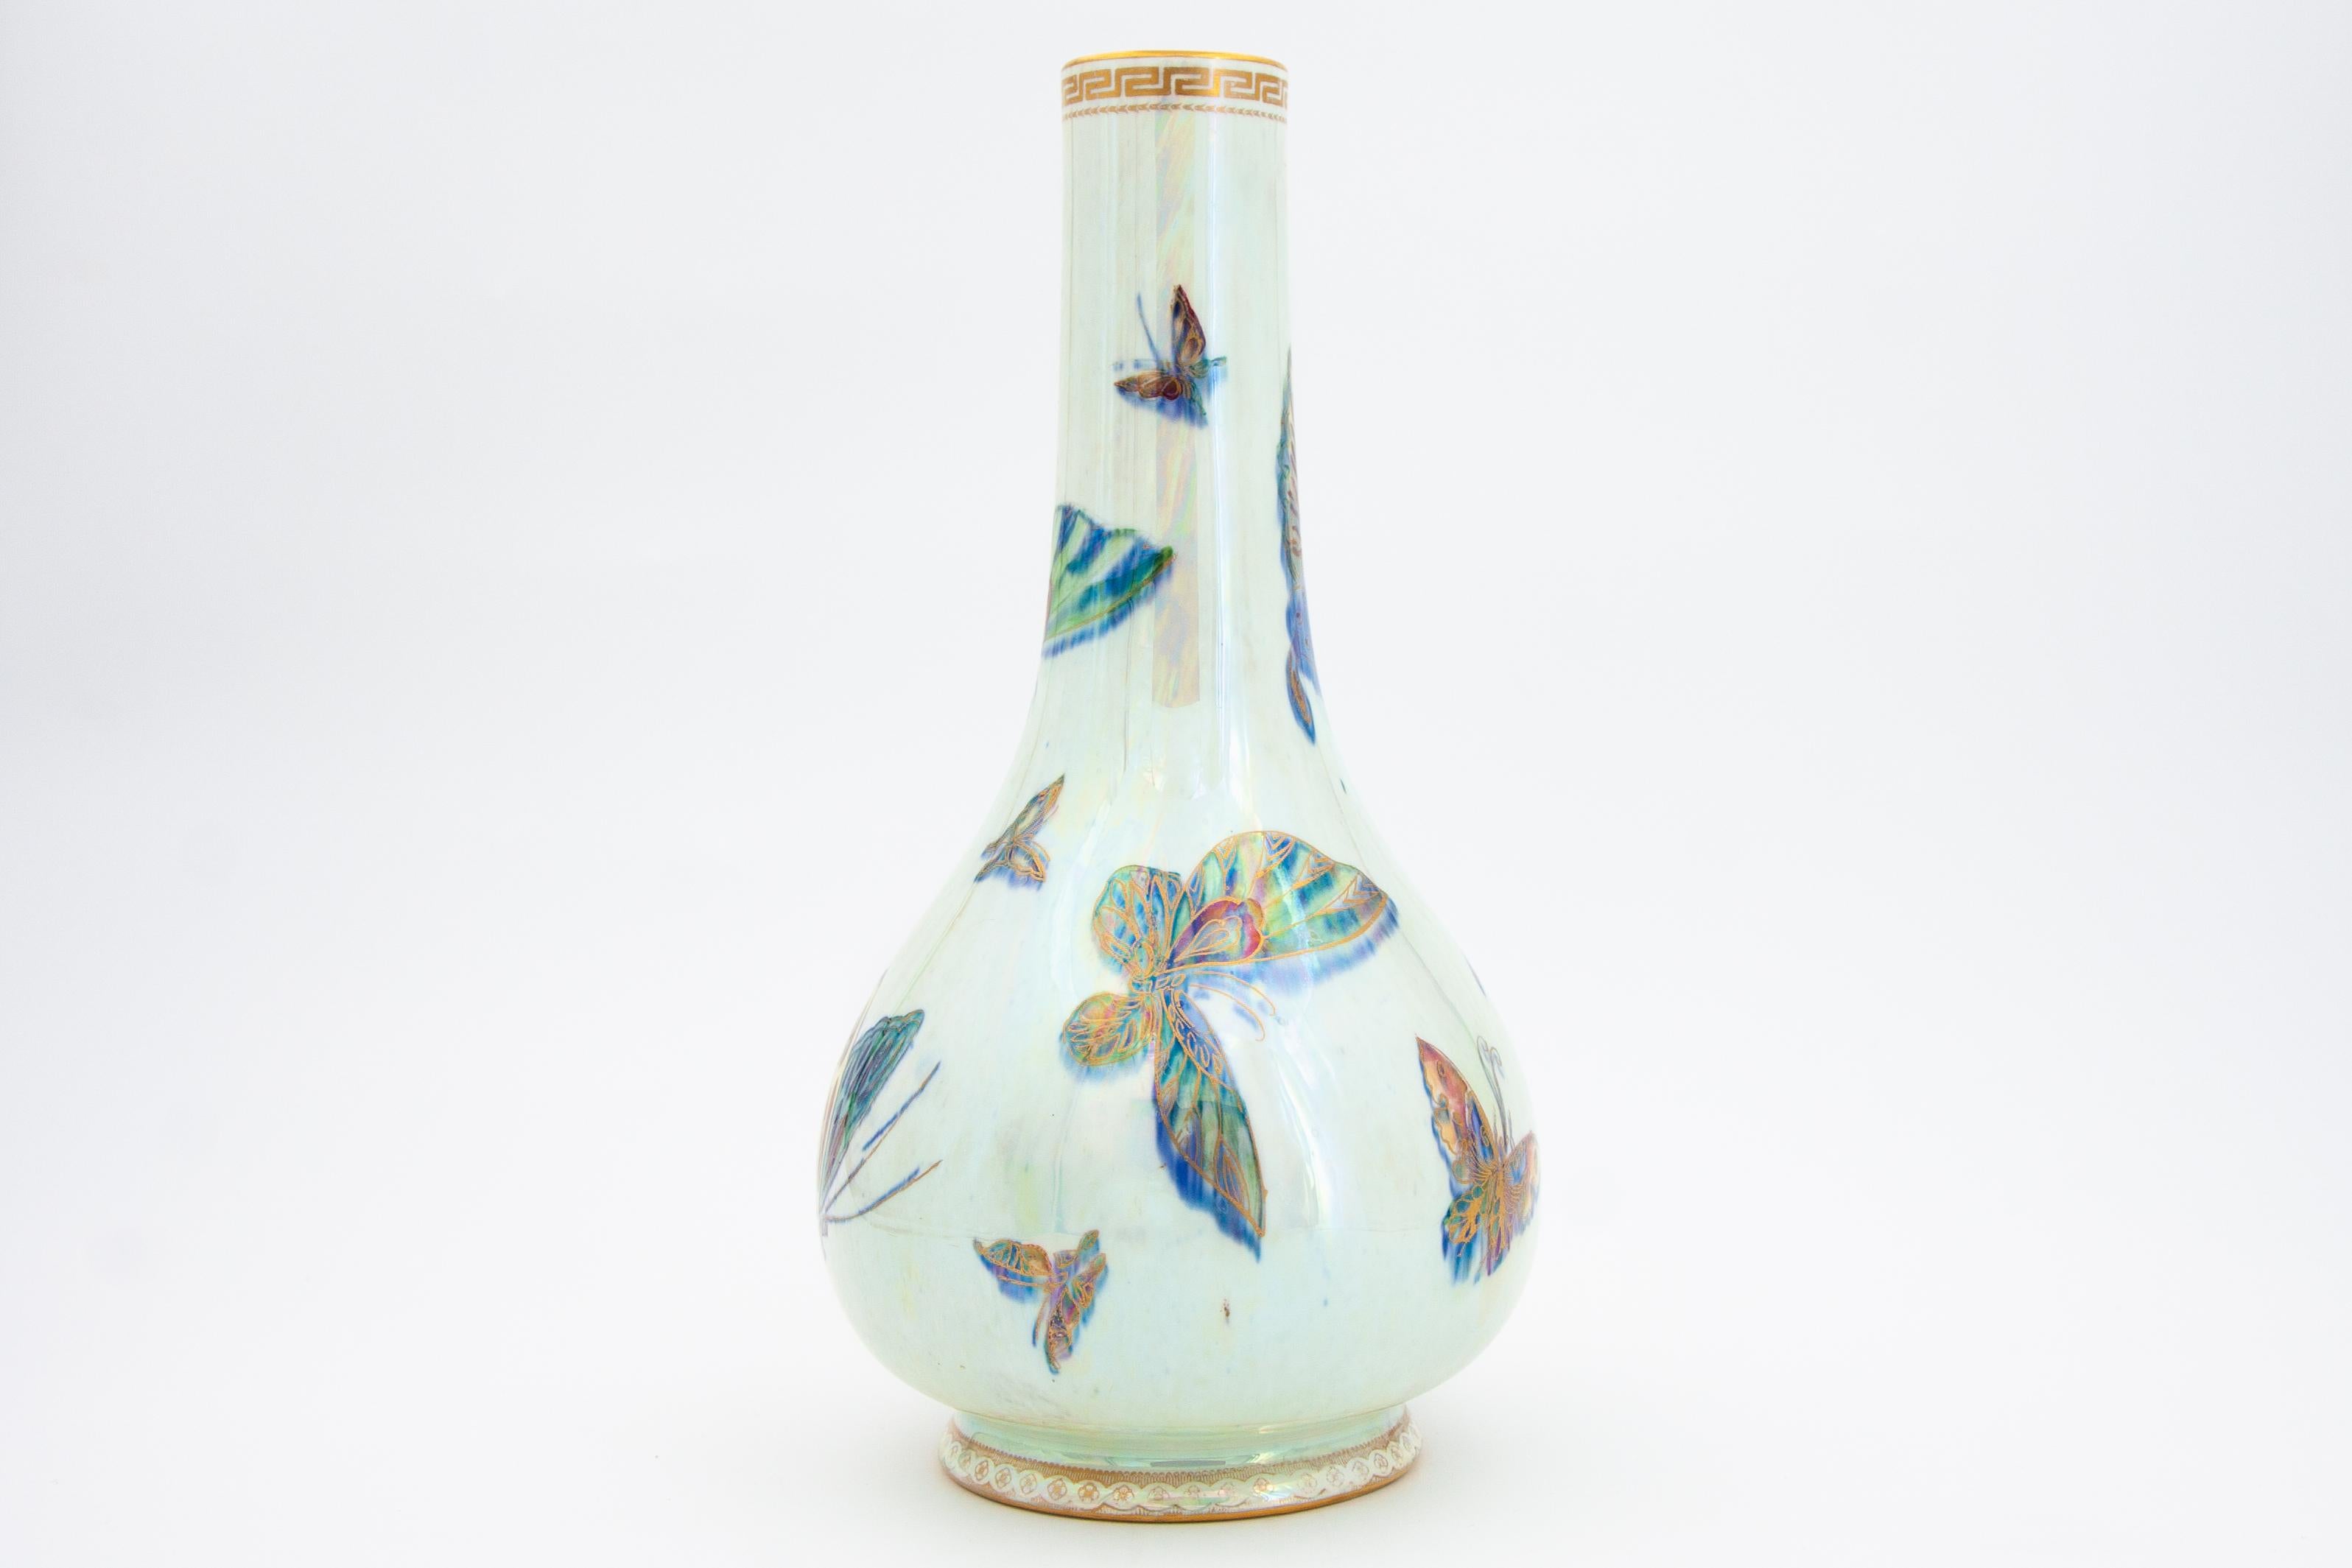 lustre vases for sale